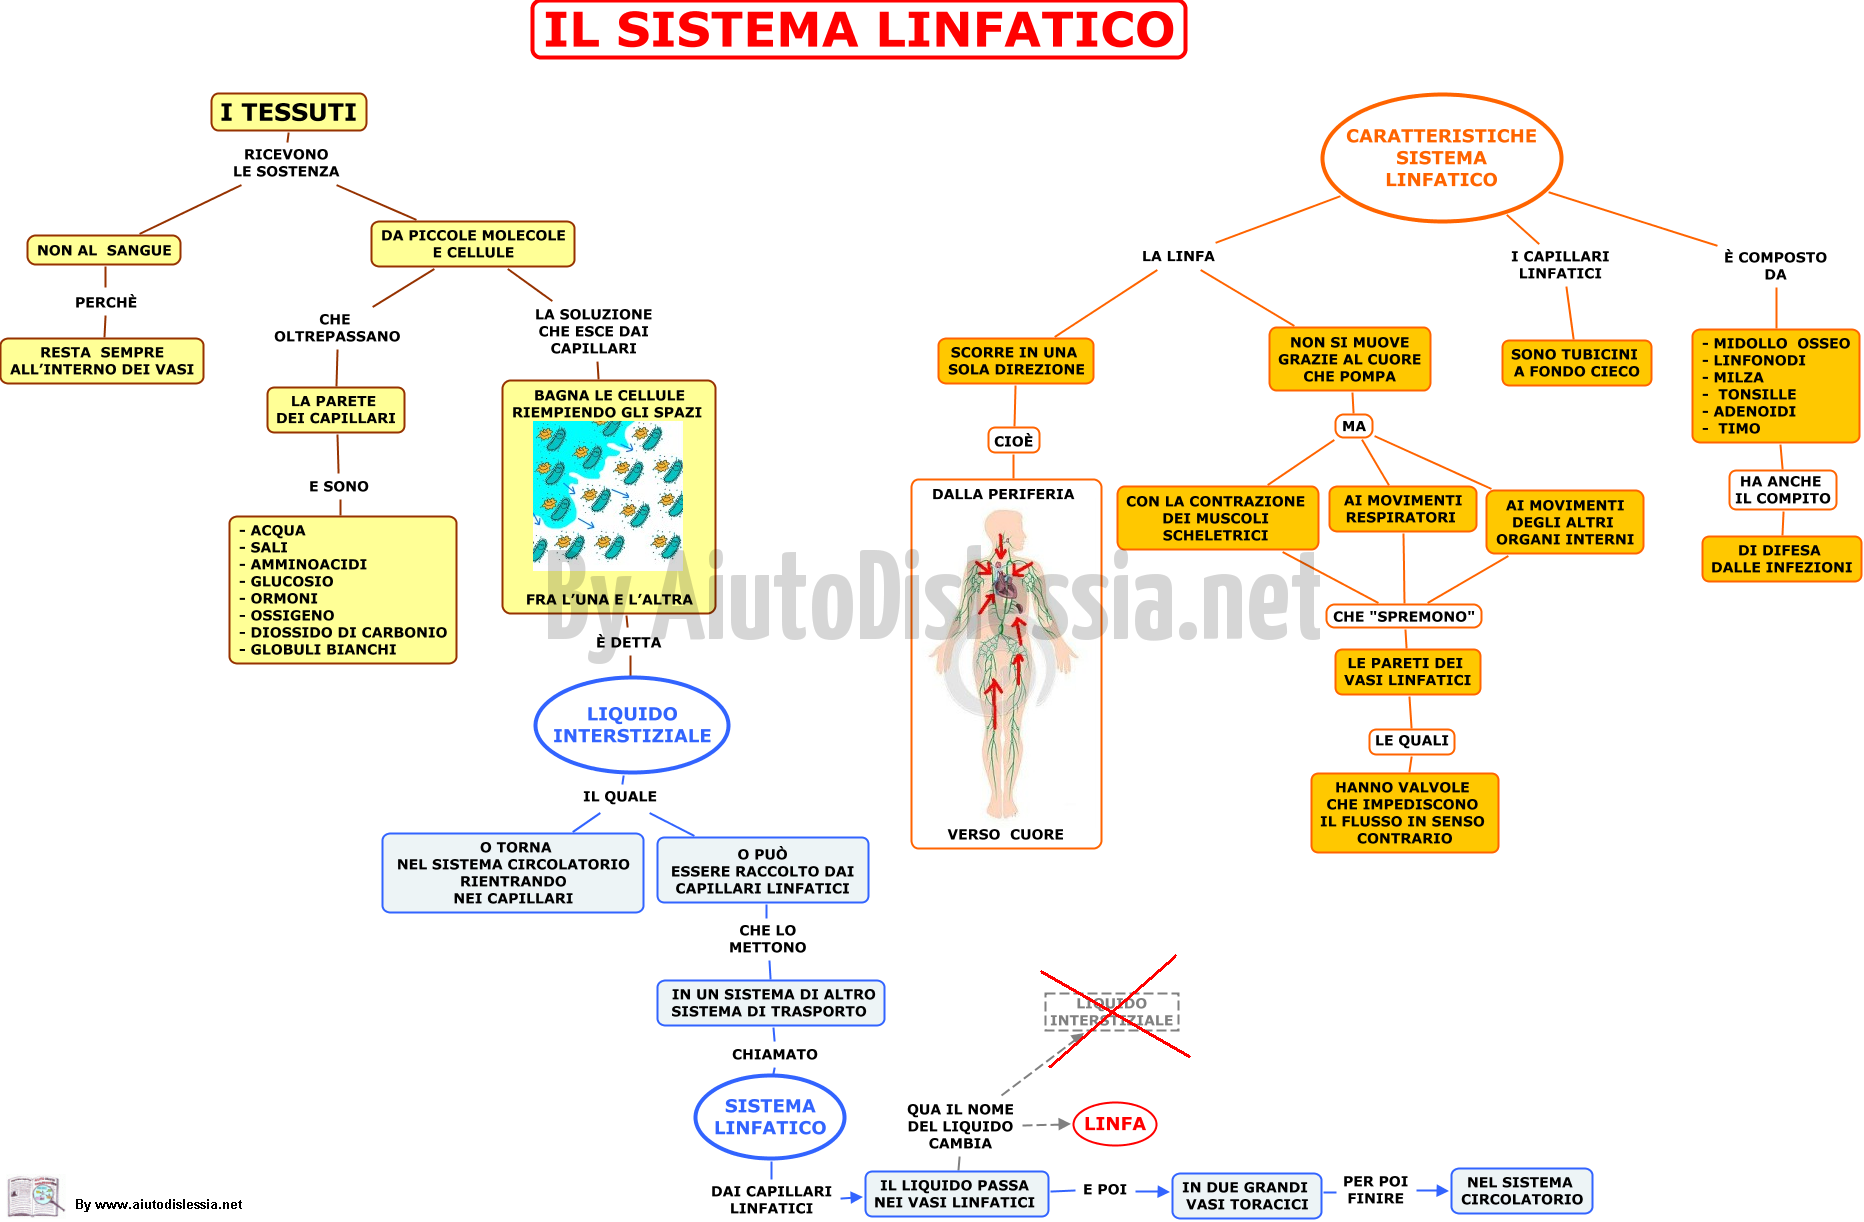 15.-IL-SISTEMA-LINFATICO